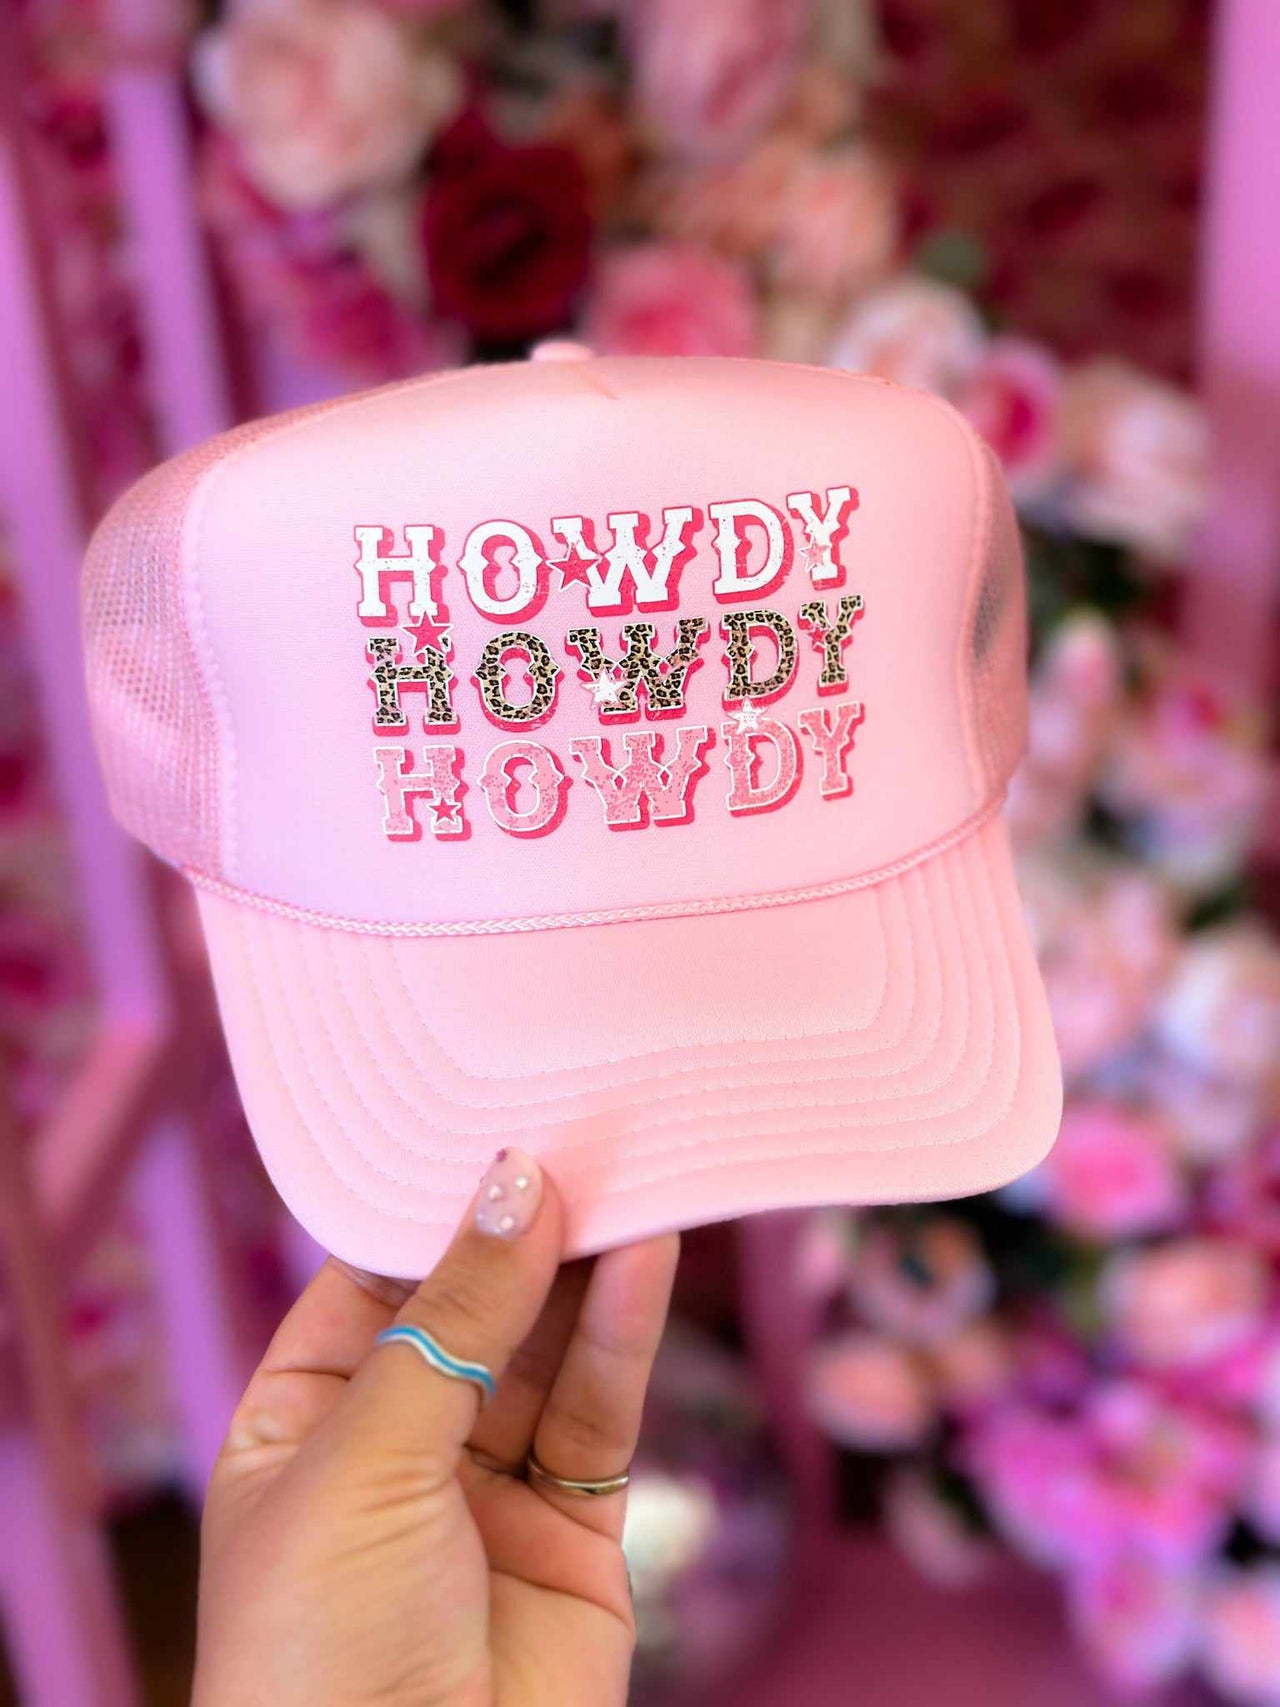 Pink Howdy Trucker Hat